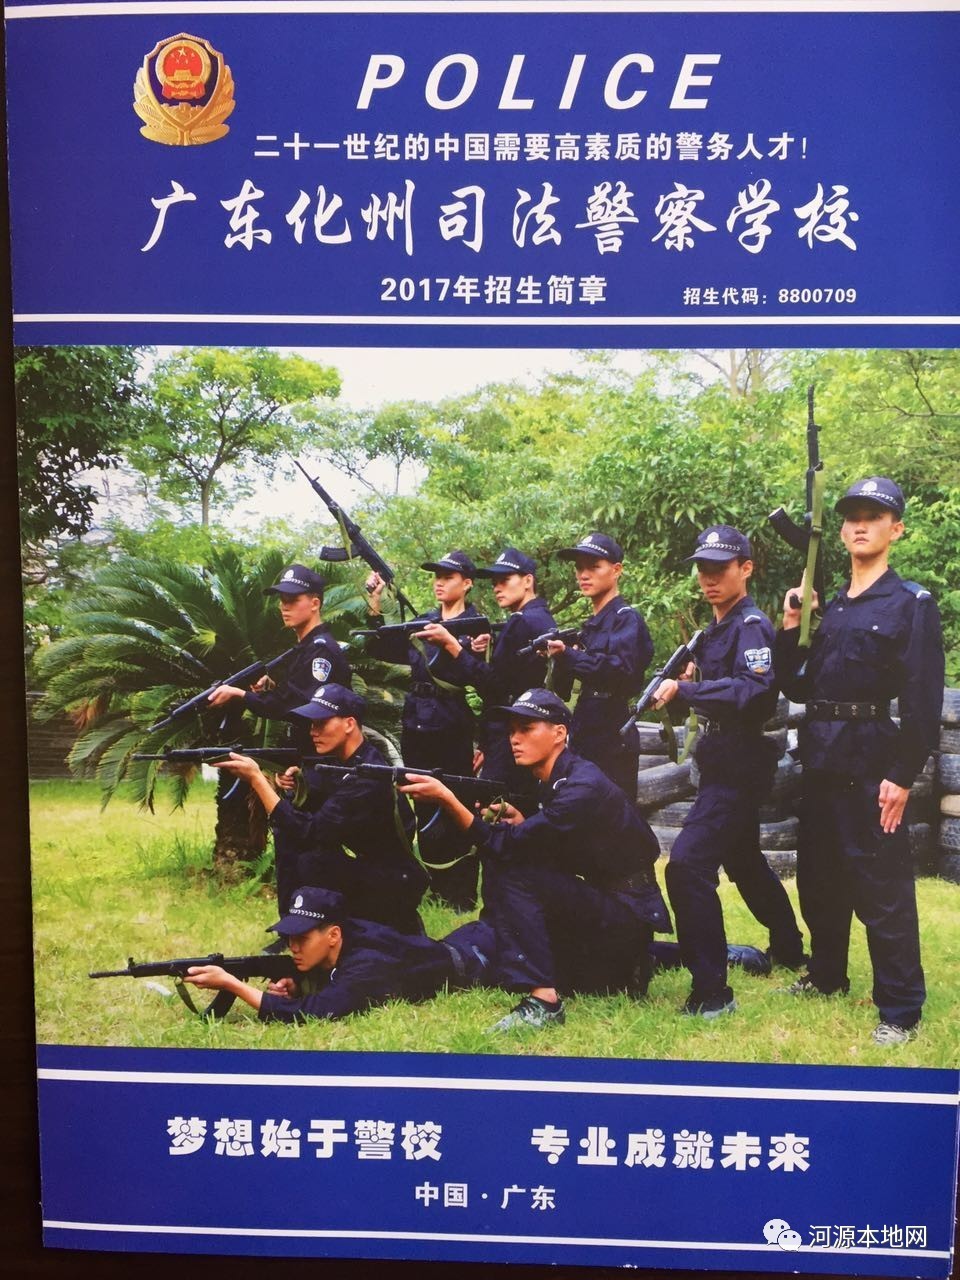 化州司法警察学校图片